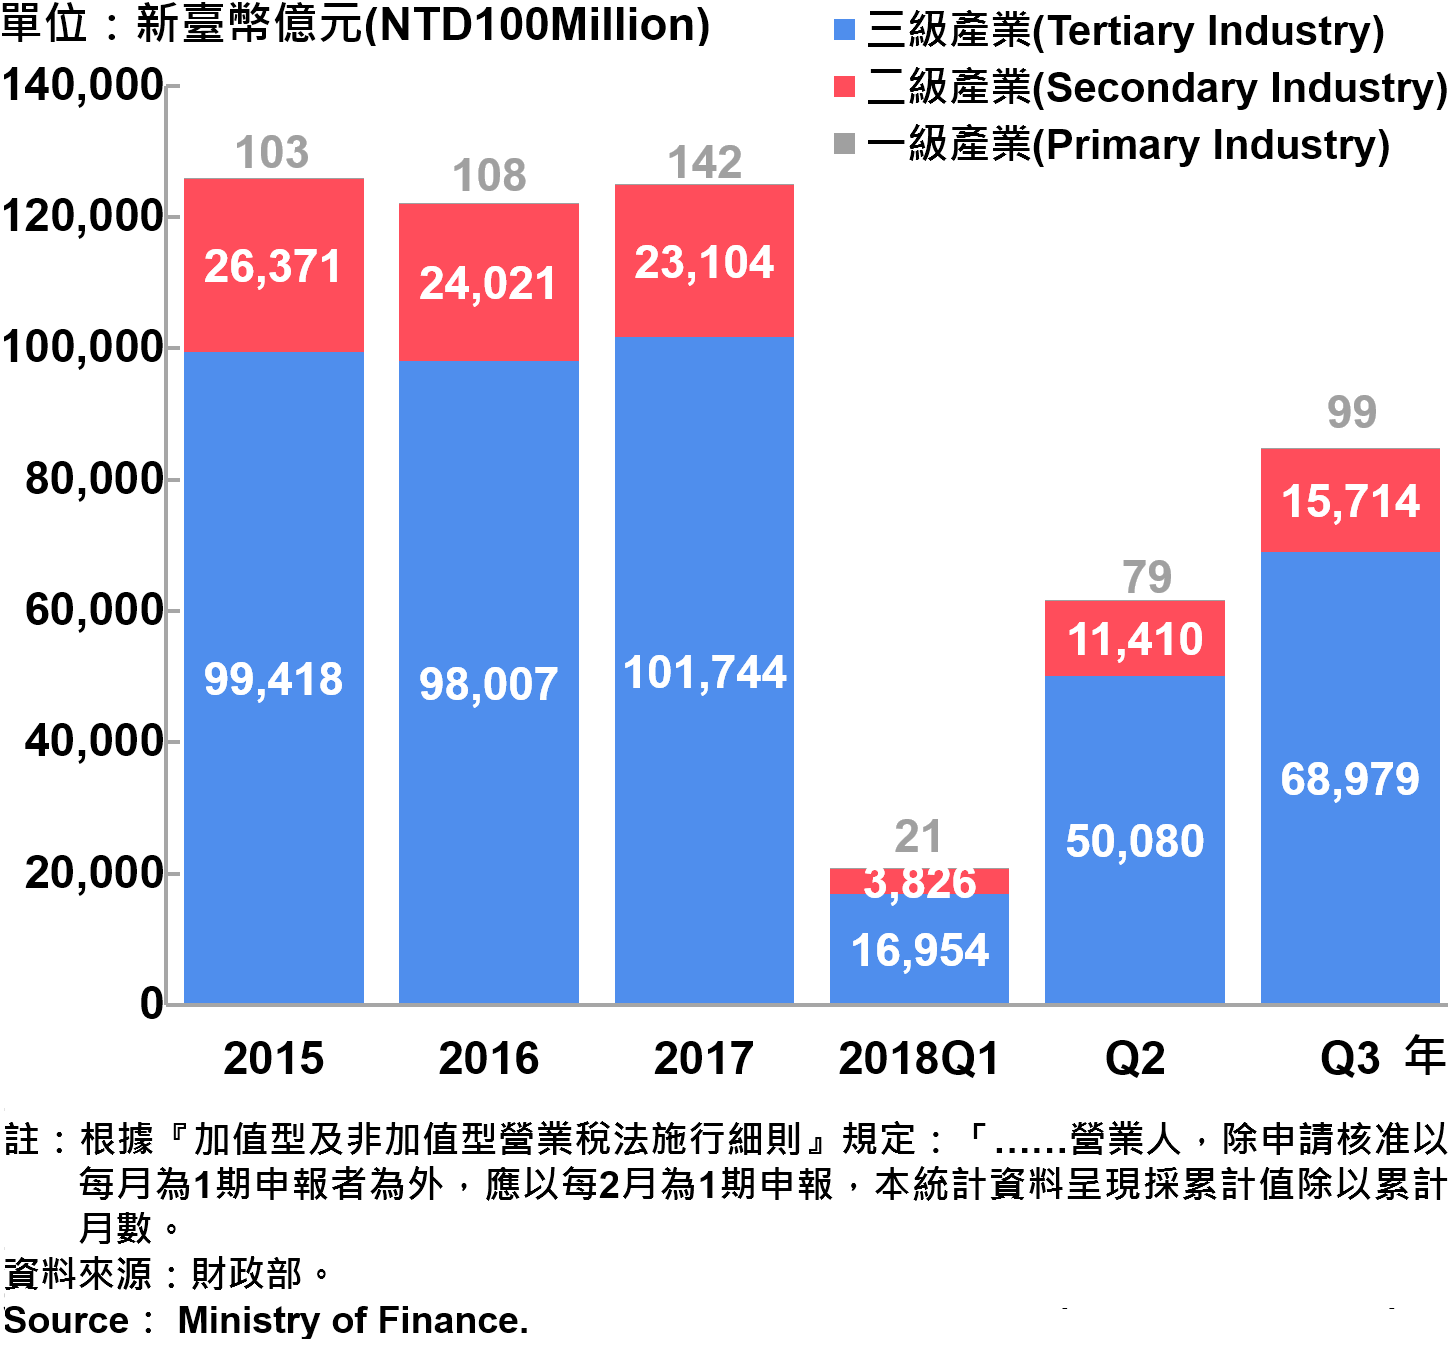 臺北市一二三級產業營業額—2018Q3 Sales of Primary , Secondary and Tertiary Industry in Taipei City—2018Q3